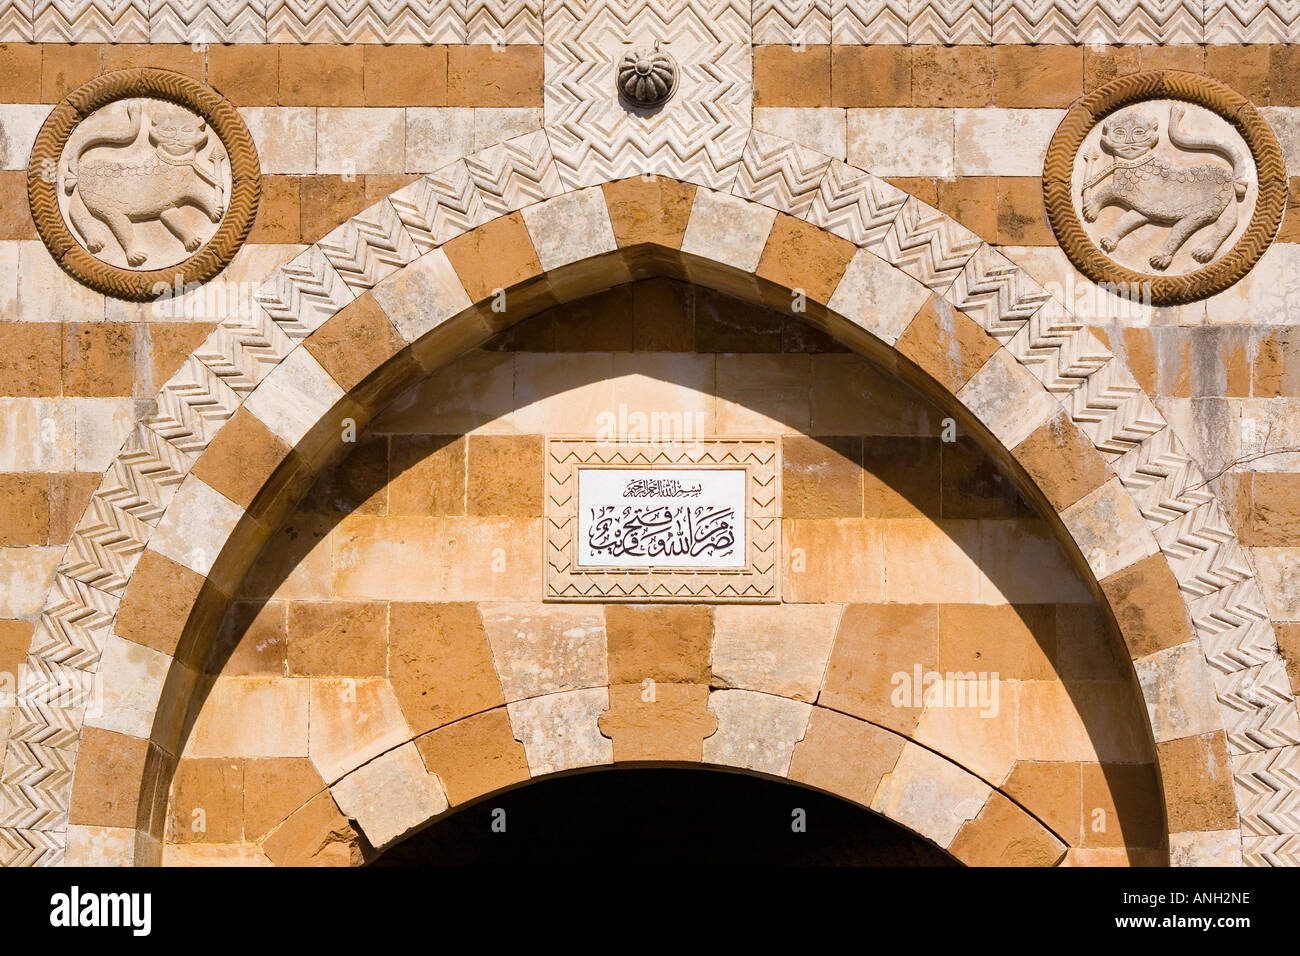 Beit Ed-Dine palace, Shouf Province, Lebanon Stock Photo